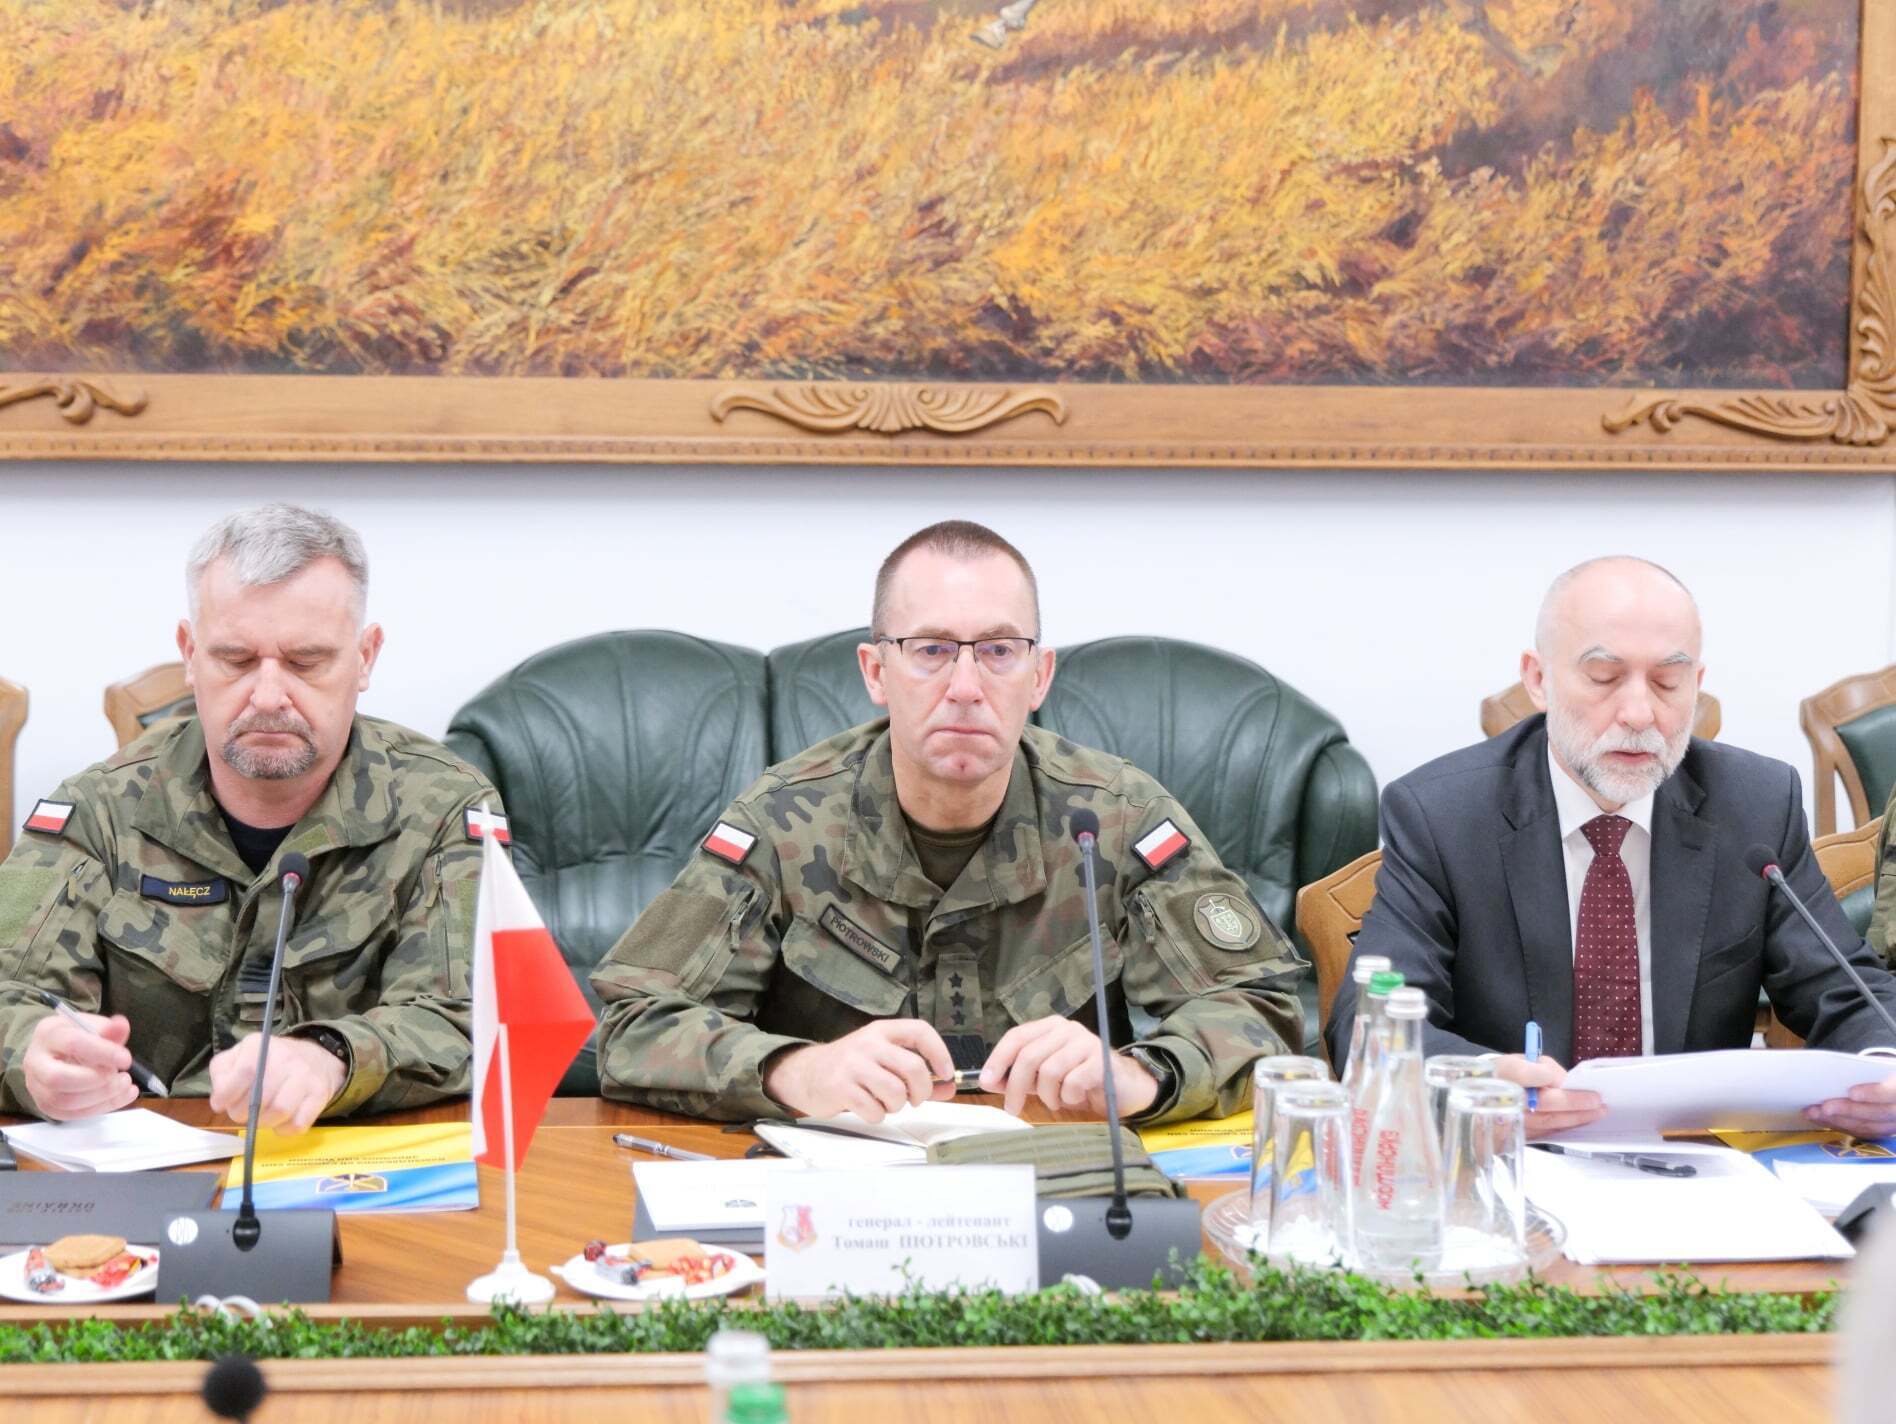 Генерал Томаш Пиотровски заявил, что Польша будет сотрудничать с ВСУ.